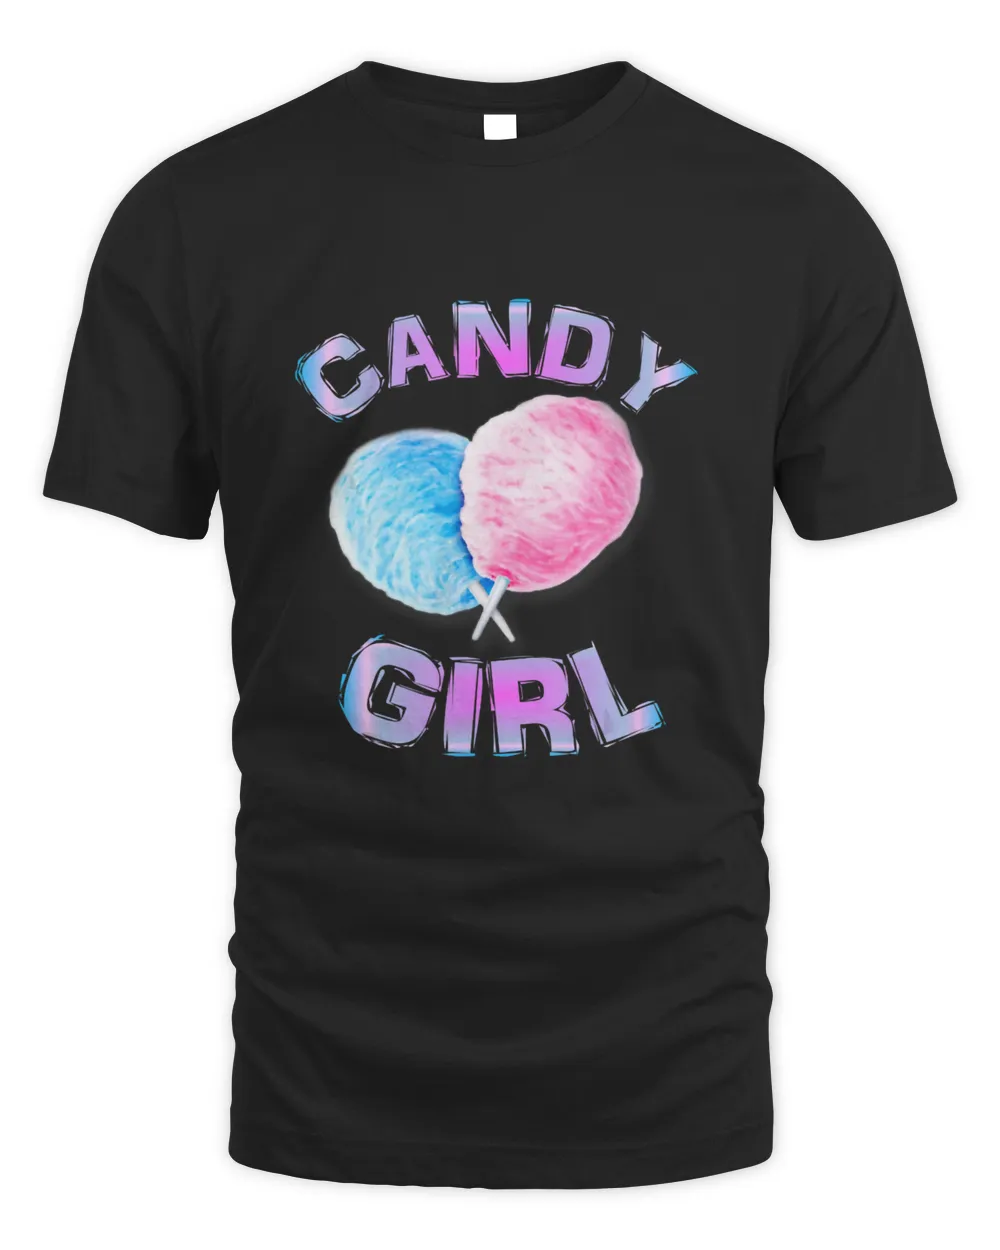 Cotton Candy Girl Cute Fun Girls Juniors Women Ages 3 to 63 T-Shirt